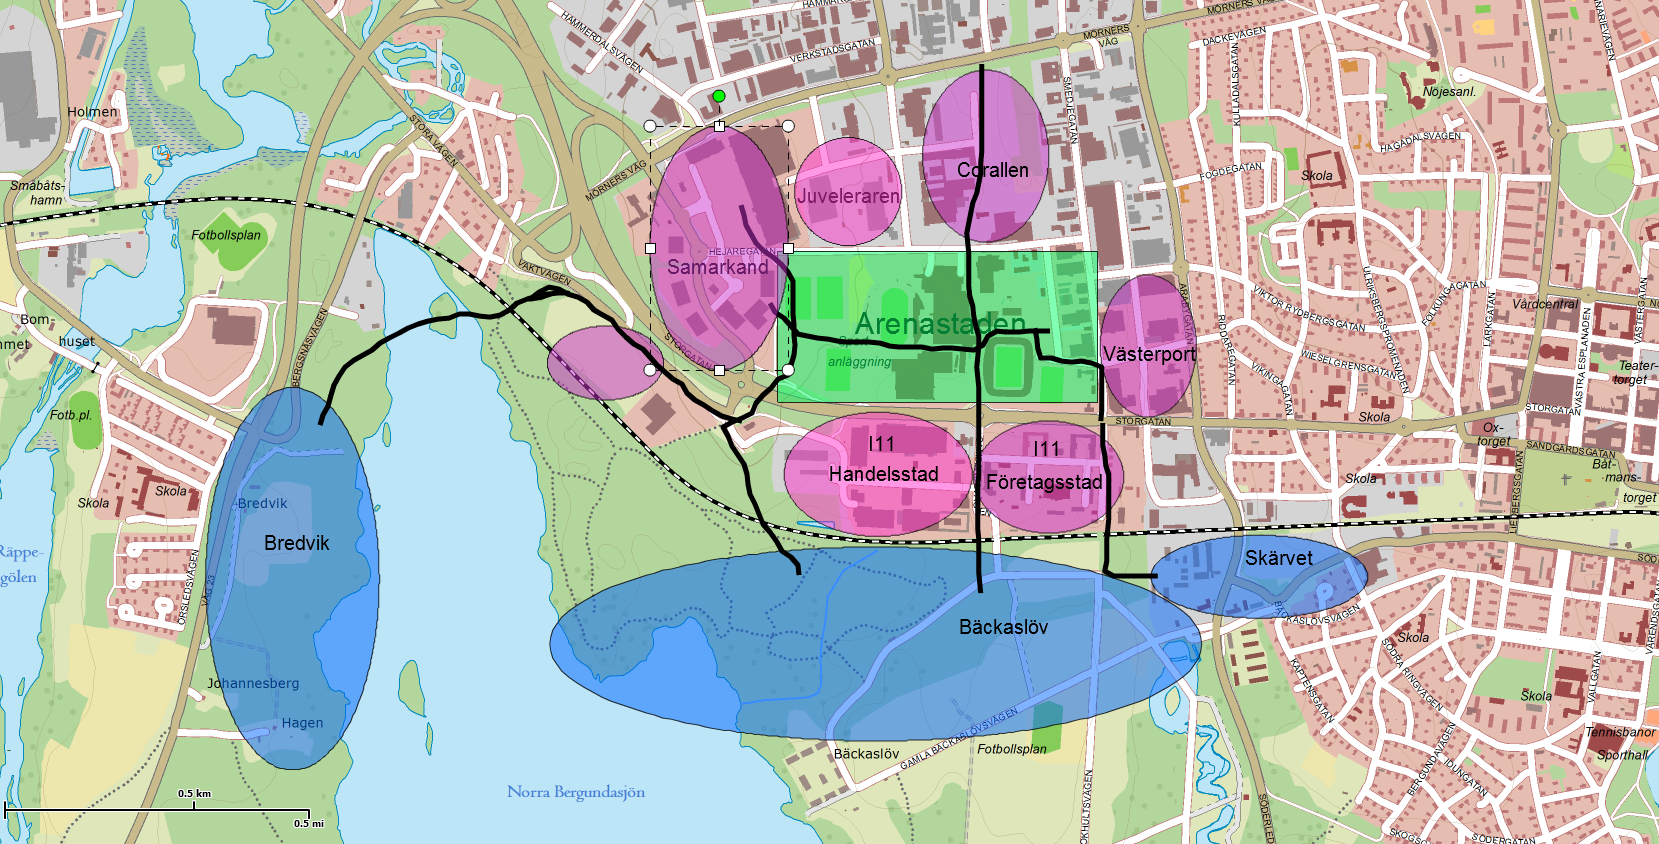 Områdets förutsättningar Arenastaden ligger centralt i västra delen av Växjö stad och omgivet av handelsområdena Samarkand, Västerport och Handelsstad I11.